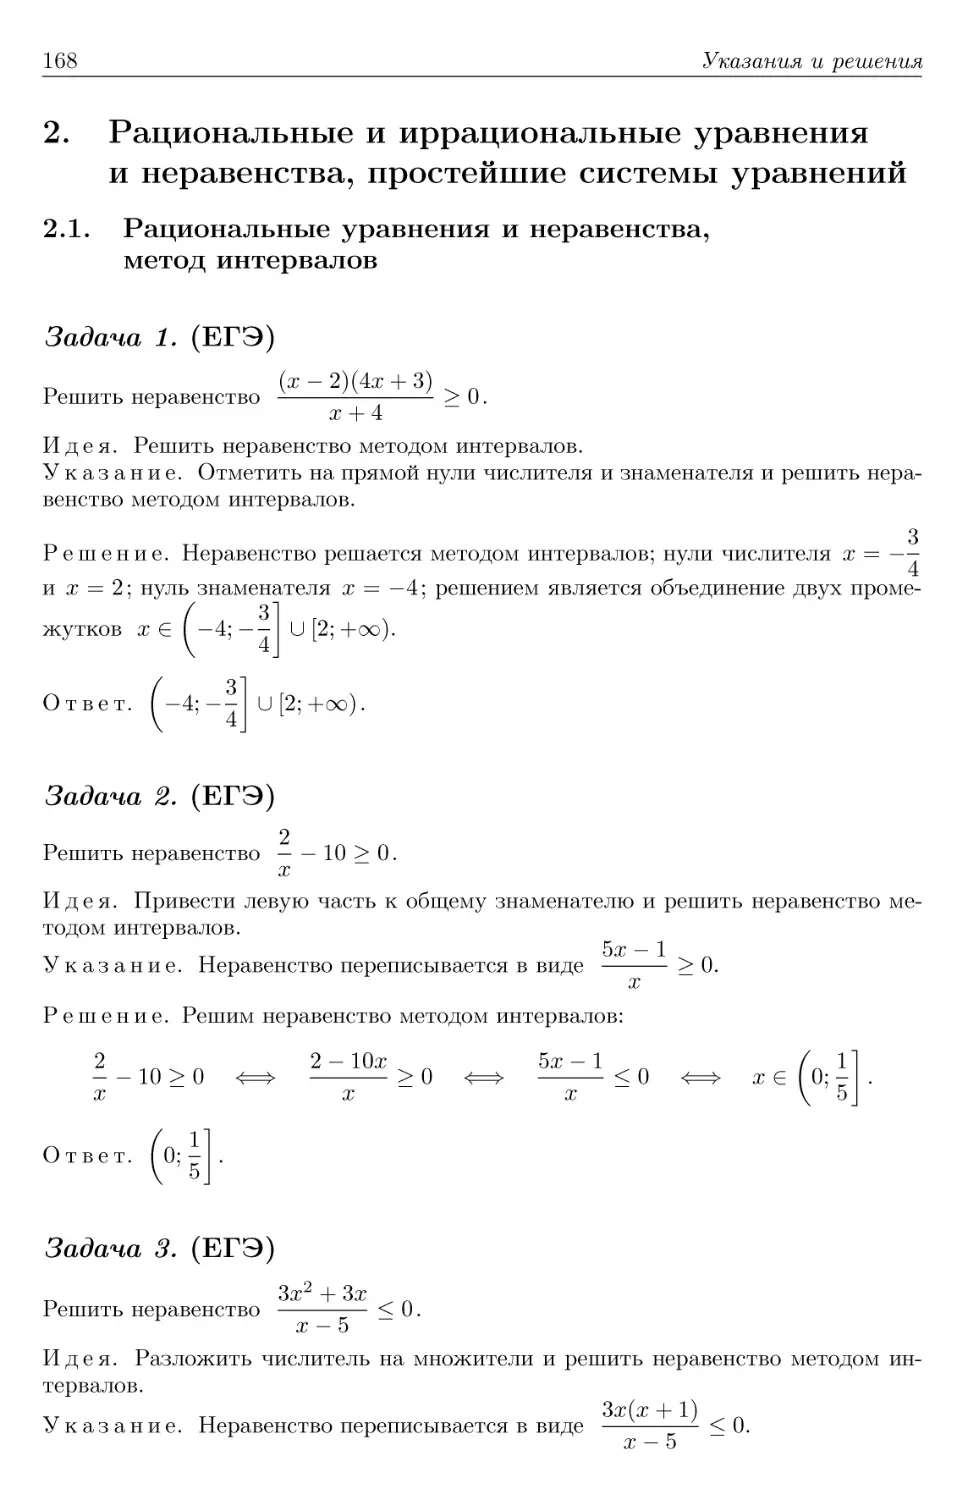 2. Рациональные и иррациональные уравнения и неравенства, простейшие системы уравнений